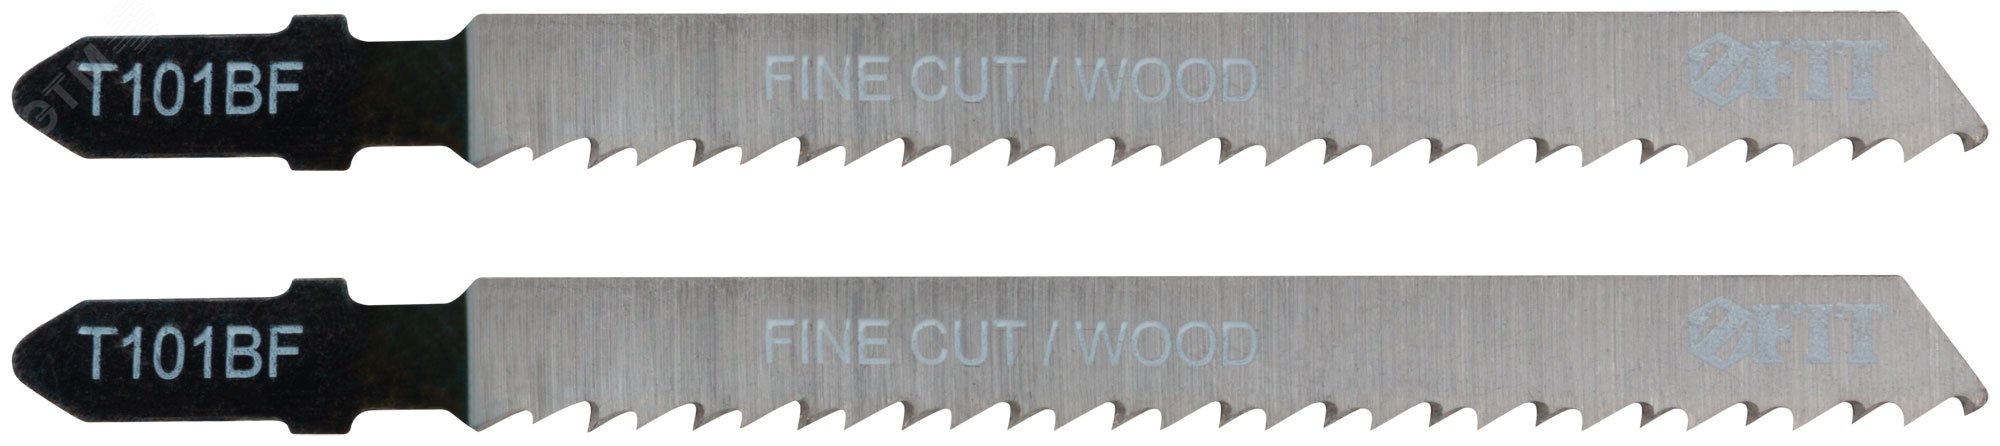 Полотна по дереву, Bimetal, шлифованные под свободным углом зубья, 100/74/2.5 мм (T101BF), 2 шт 40955 FIT - превью 2